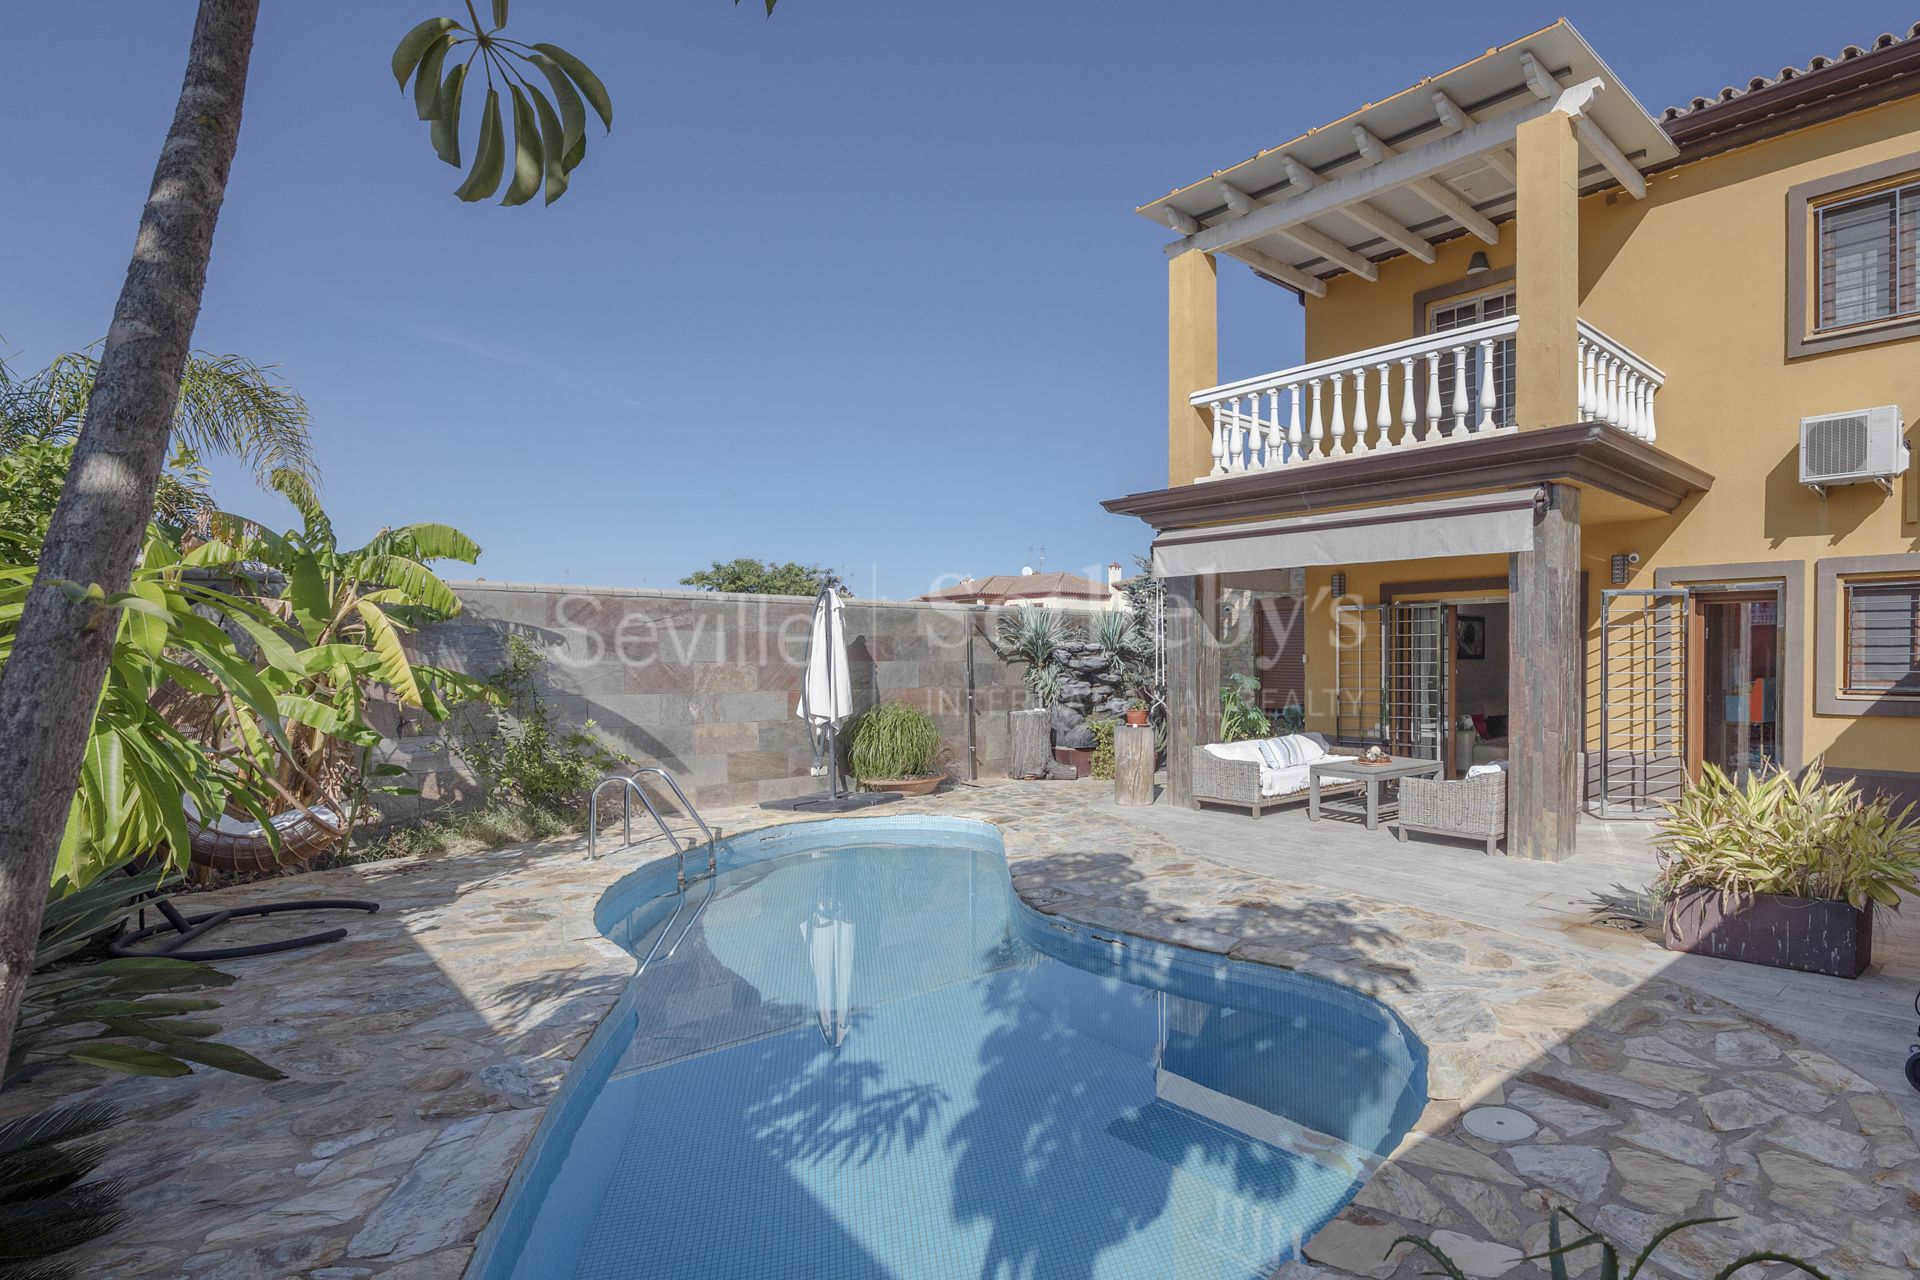 Casa en Espartinas totalmente reformada con gran porche, jardín y piscina.